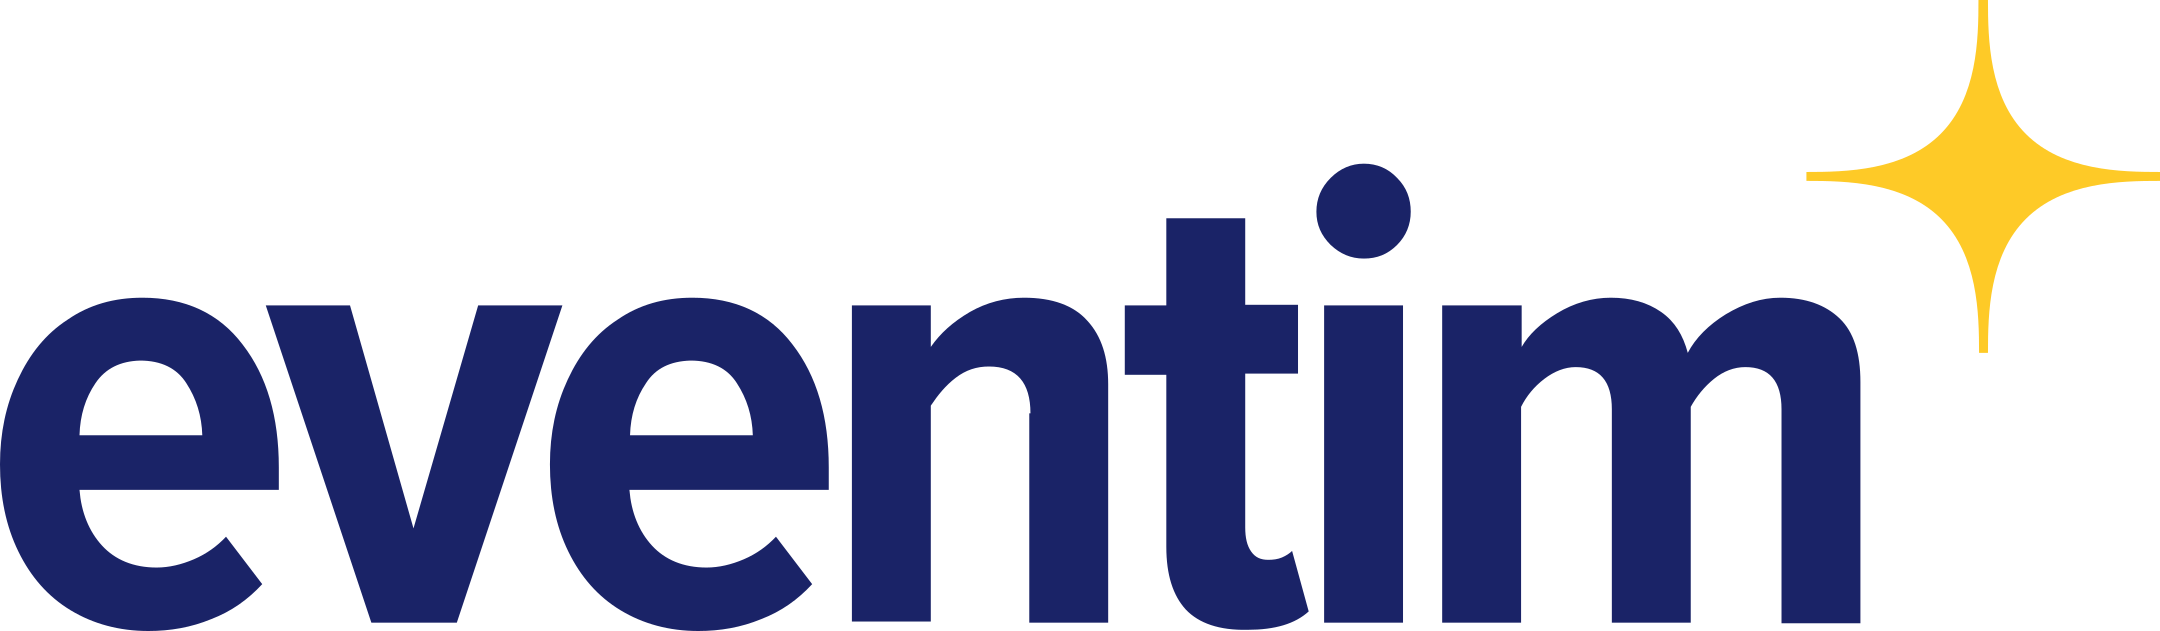 eventim logo 1 - Eventim Logo